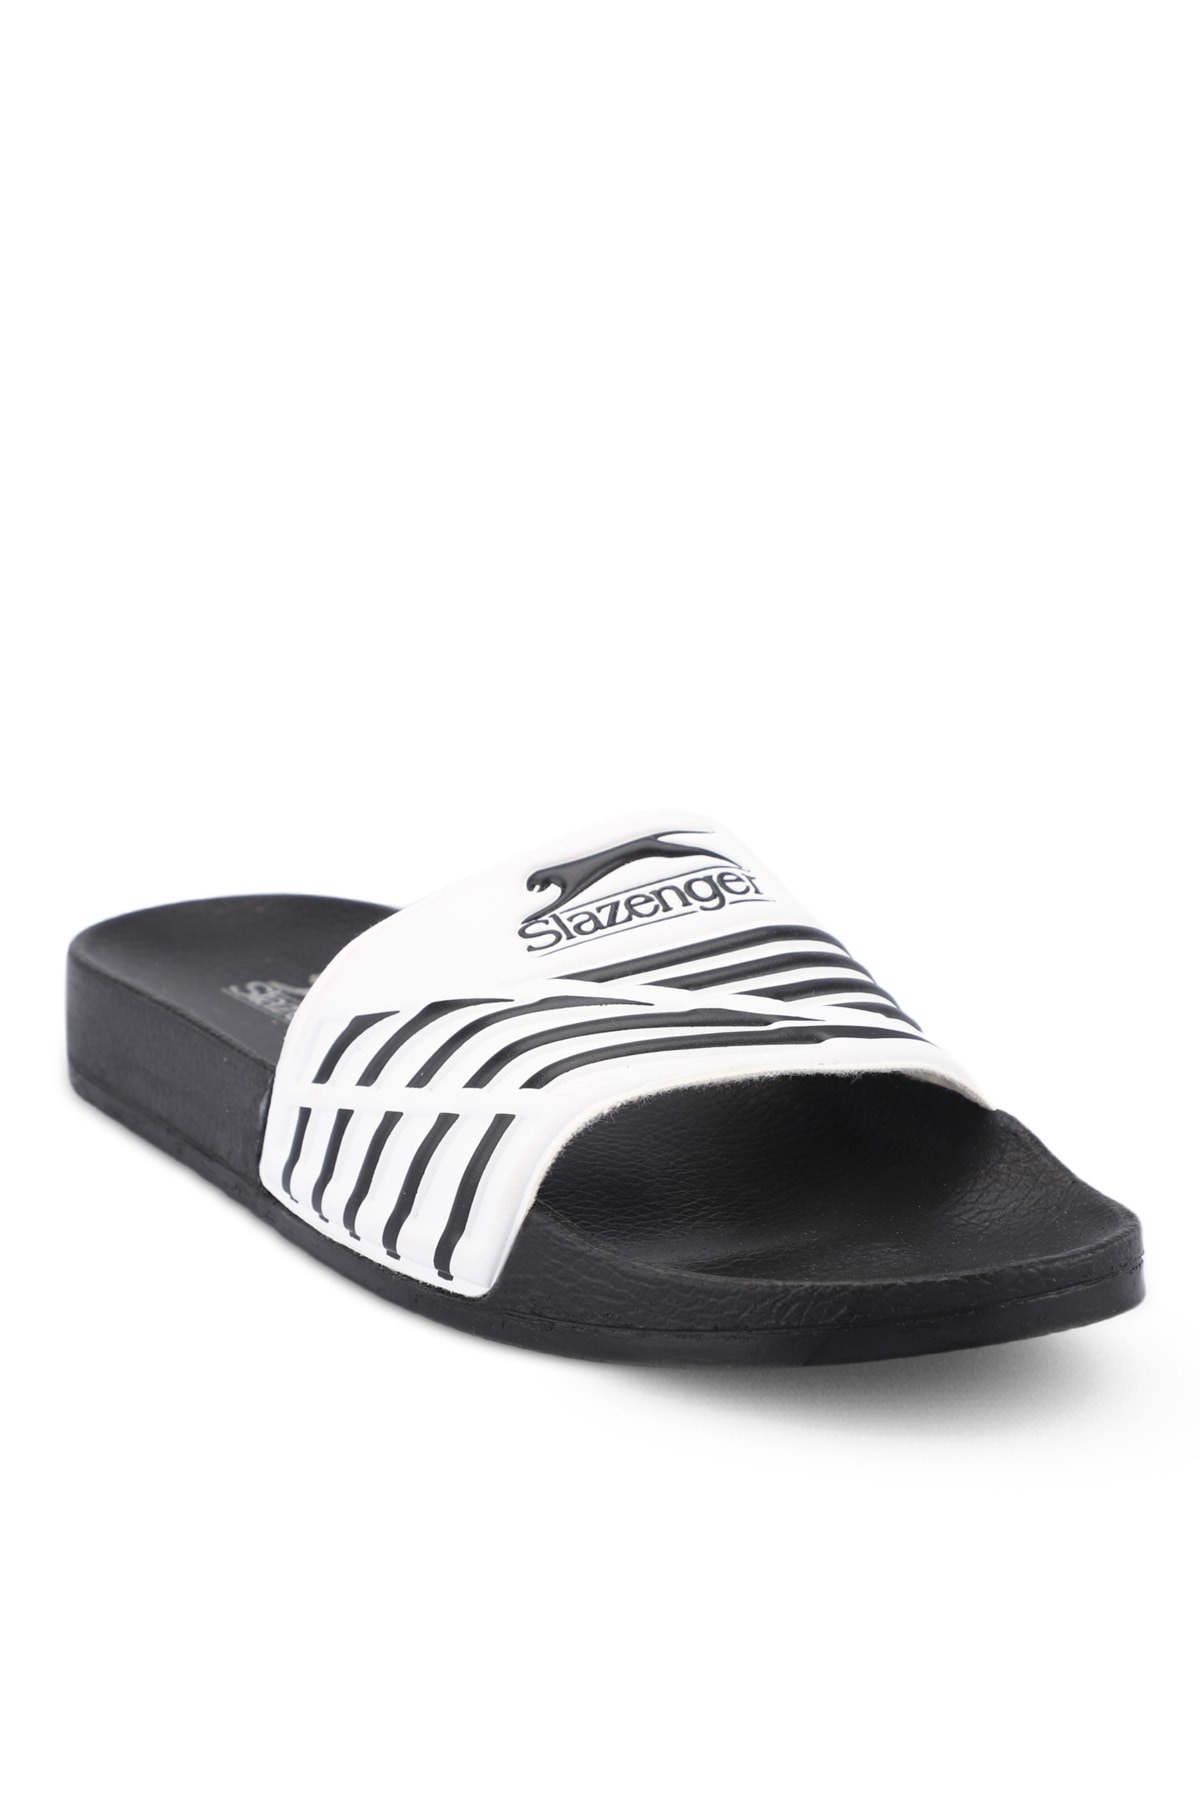 Slazenger FION Men's Slippers White / Black